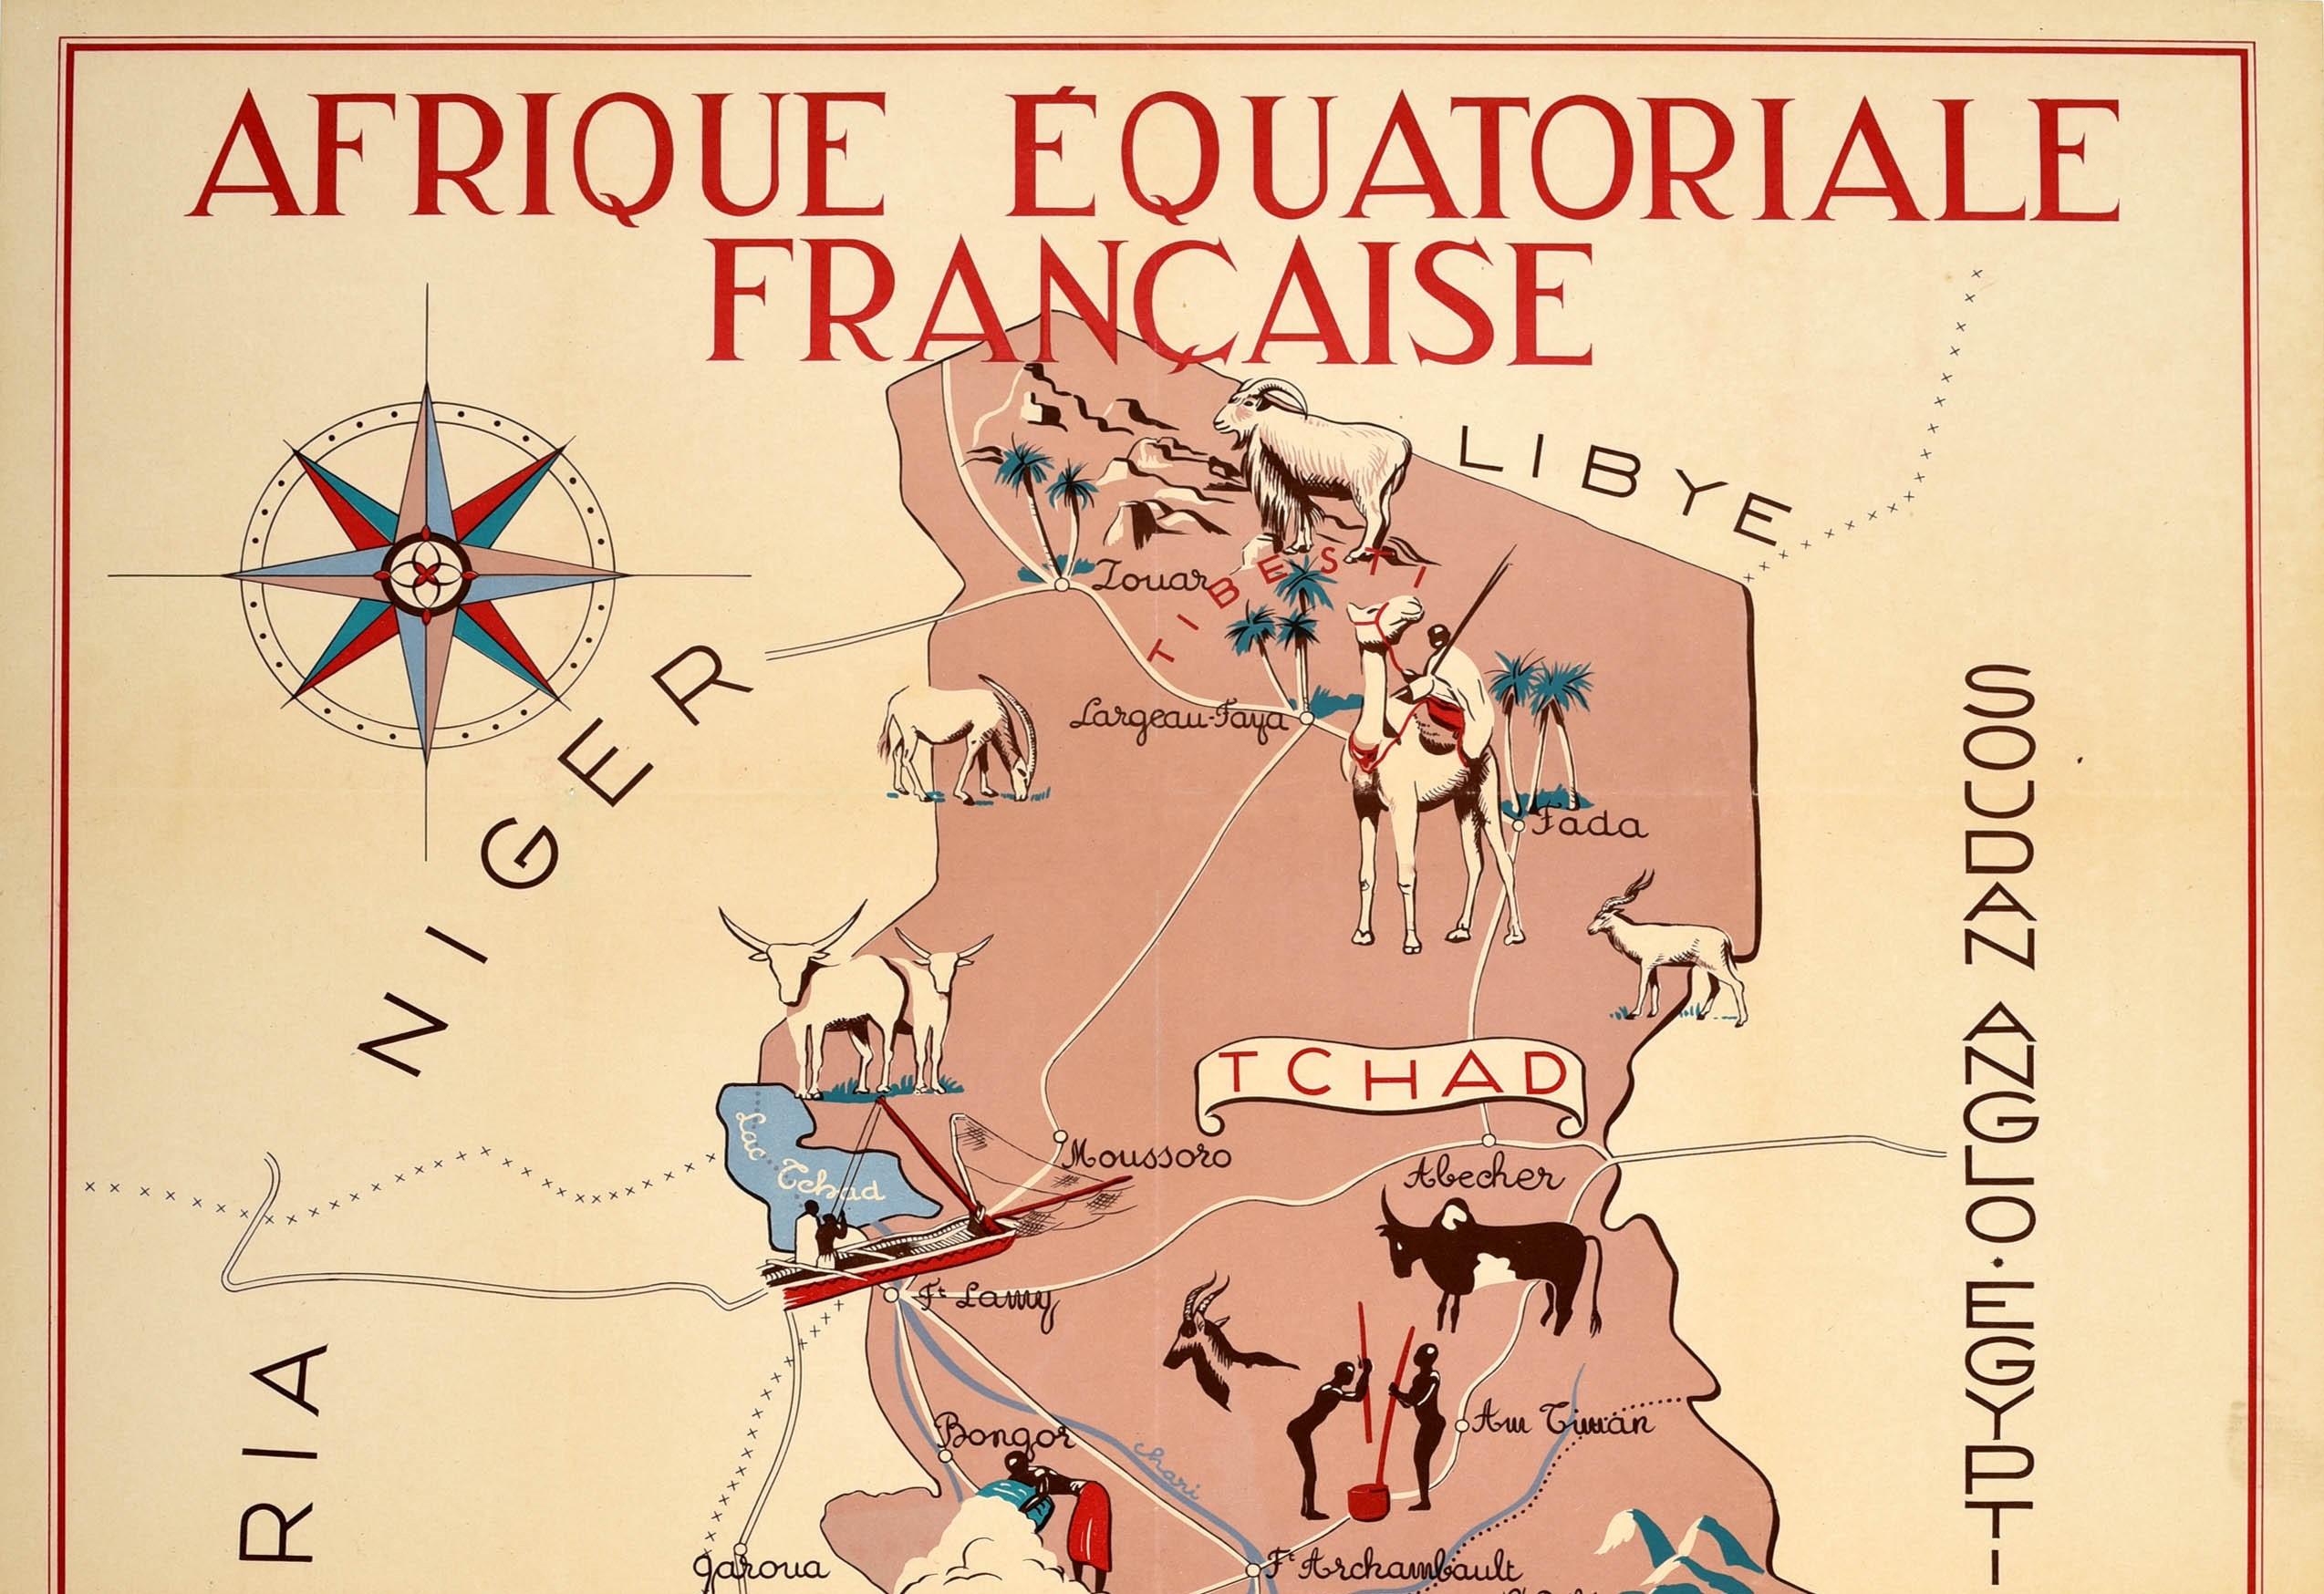 Affiche cartographique originale de l'Afrique équatoriale française / French Equatorial Africa, illustrée par J. Choain Audiberti. Choain Audiberti indiquant et listant les pays de la région, dont le Nigeria, le Niger, la Libye, le Tchad, le